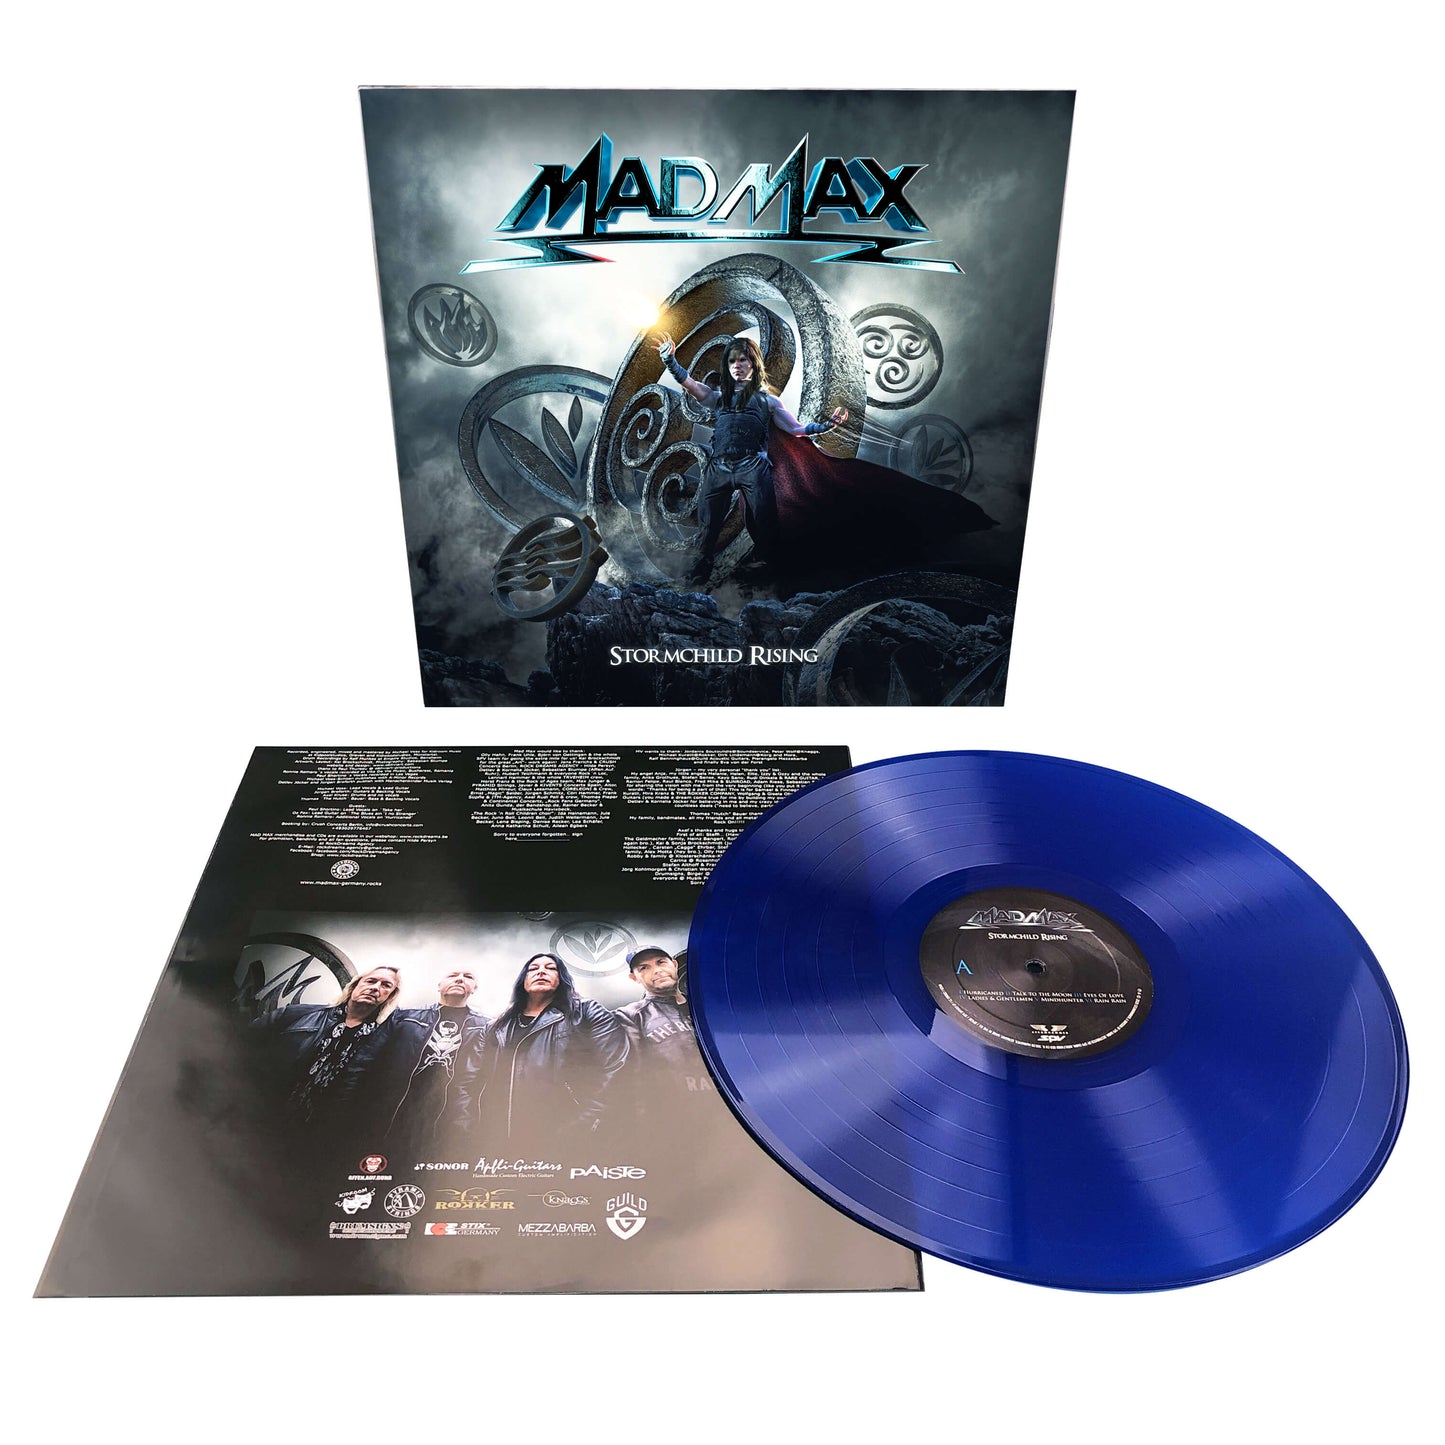 Mad Max "Stormchild Rising" LP